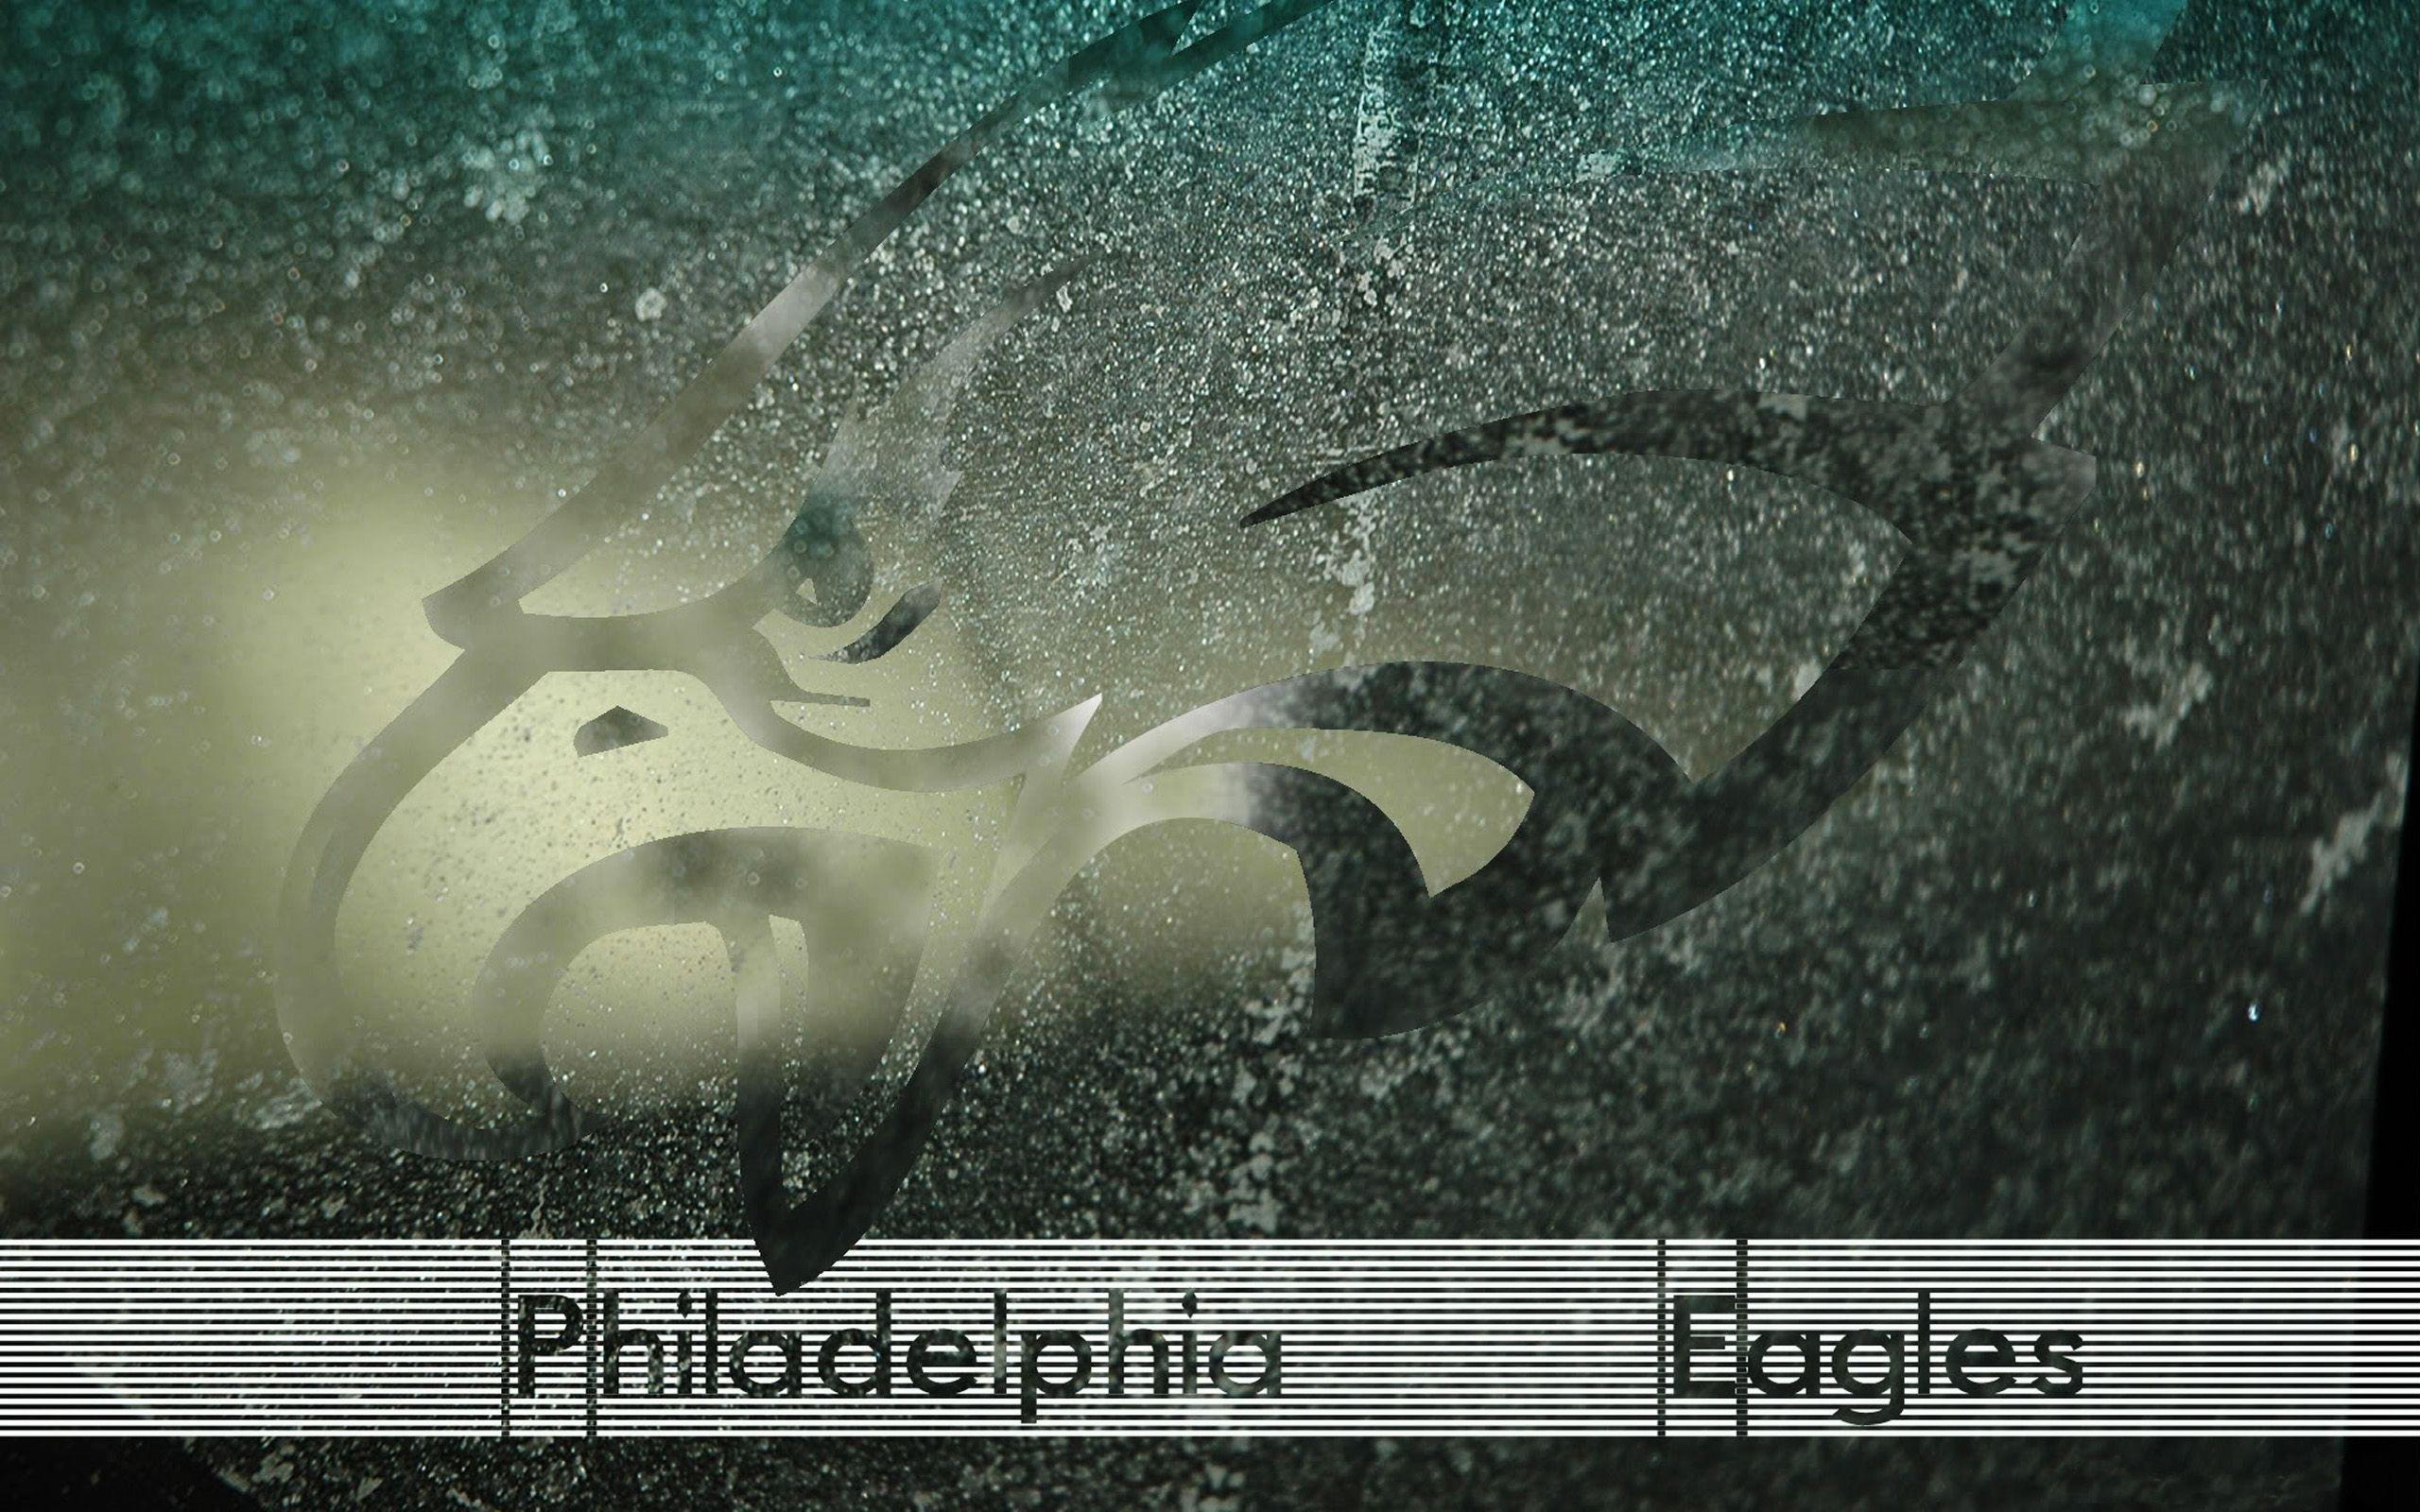 Philadelphia Eagles Full HD Wallpaper and Backgroundx1600